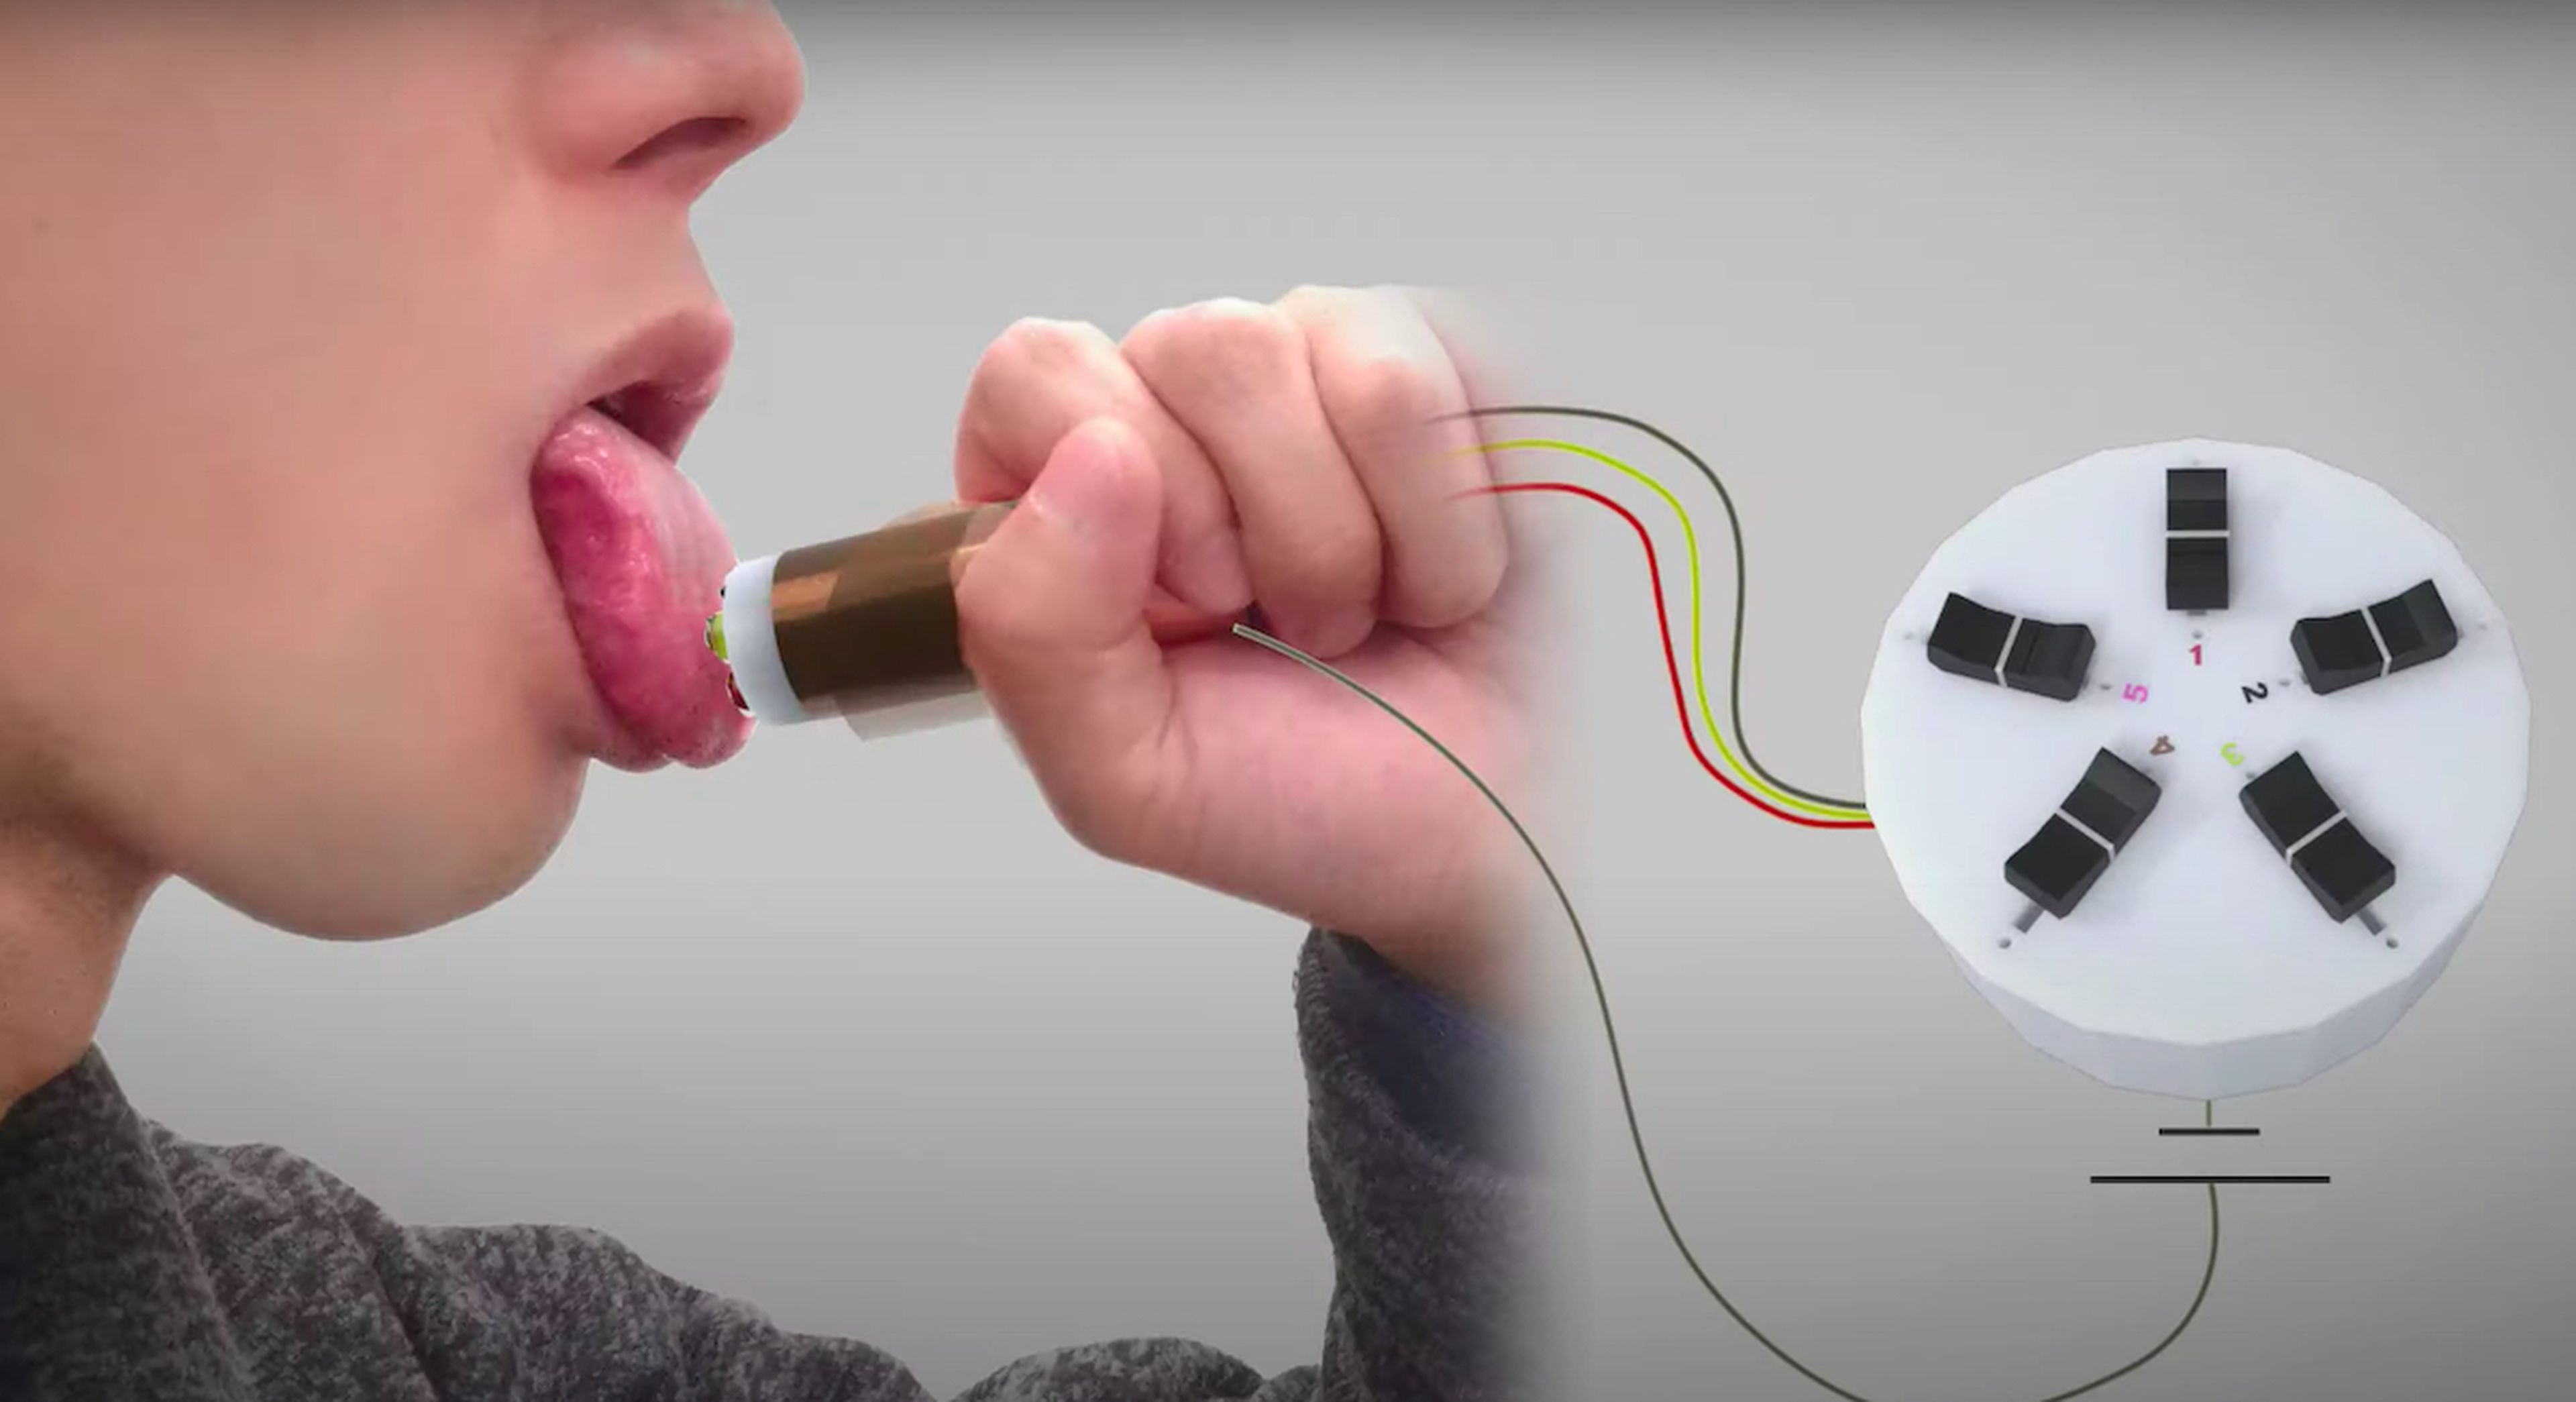 Con este curioso dispositivo podrás probar comida virtual